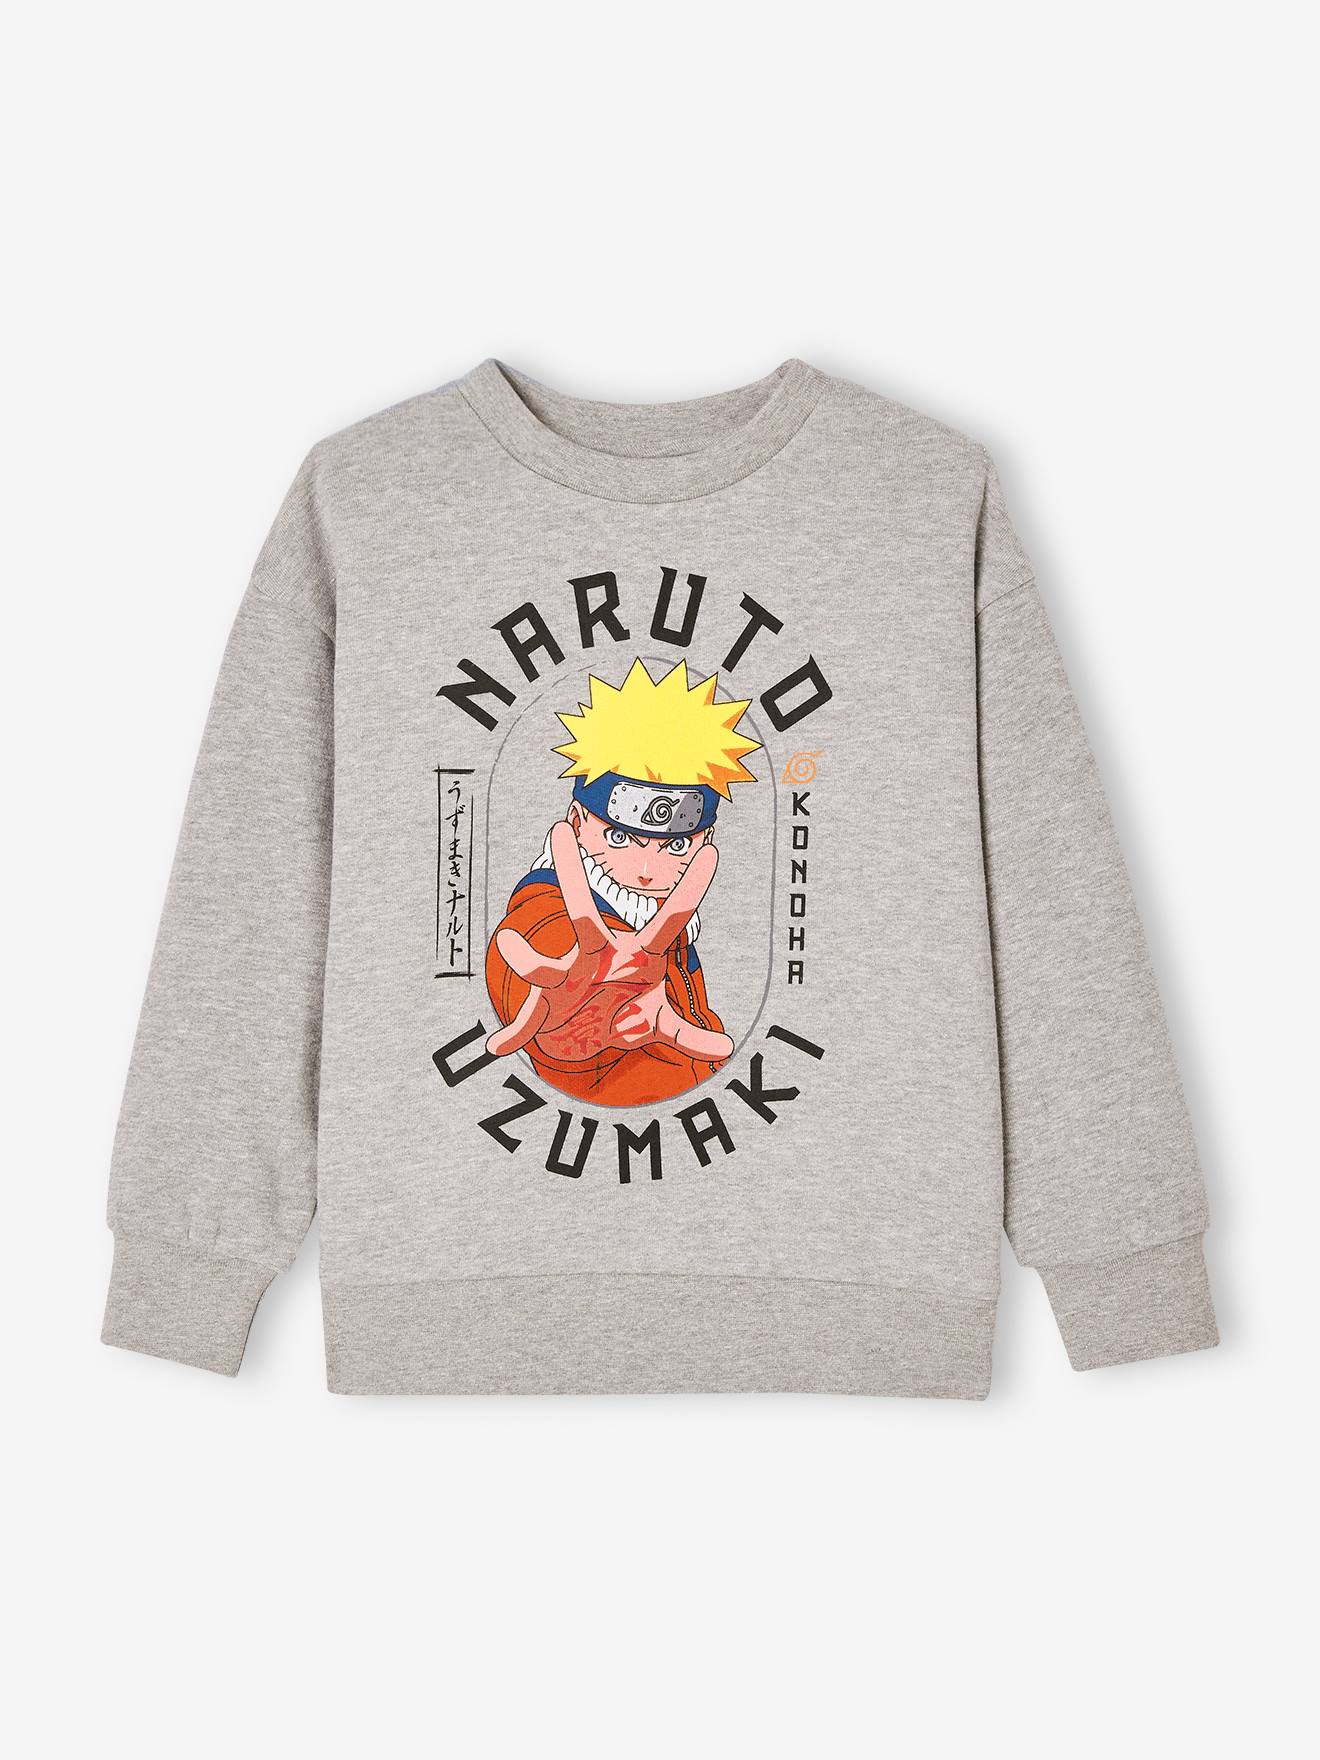 Jongenssweater Naruto® Uzumaki gemêleerd grijs